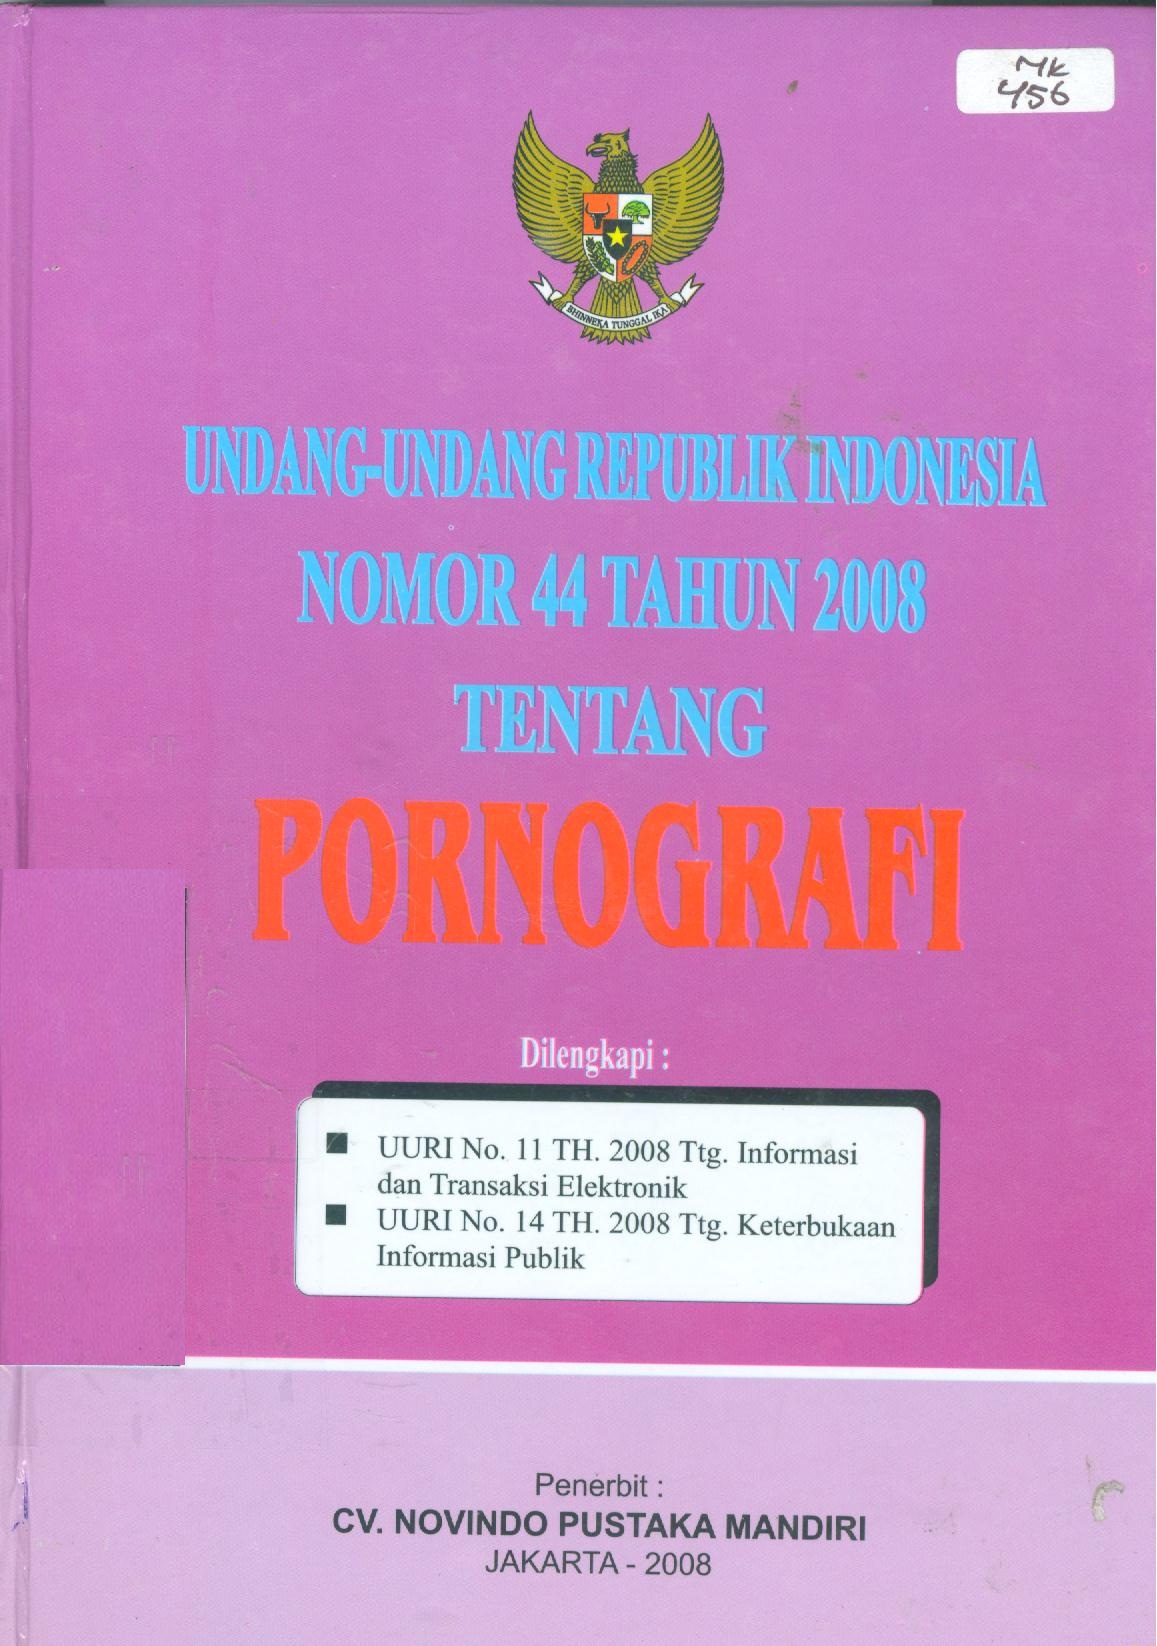 Undang-undang Republik Indonesia nomor 44 Tahun 2008 tentang Pornografi